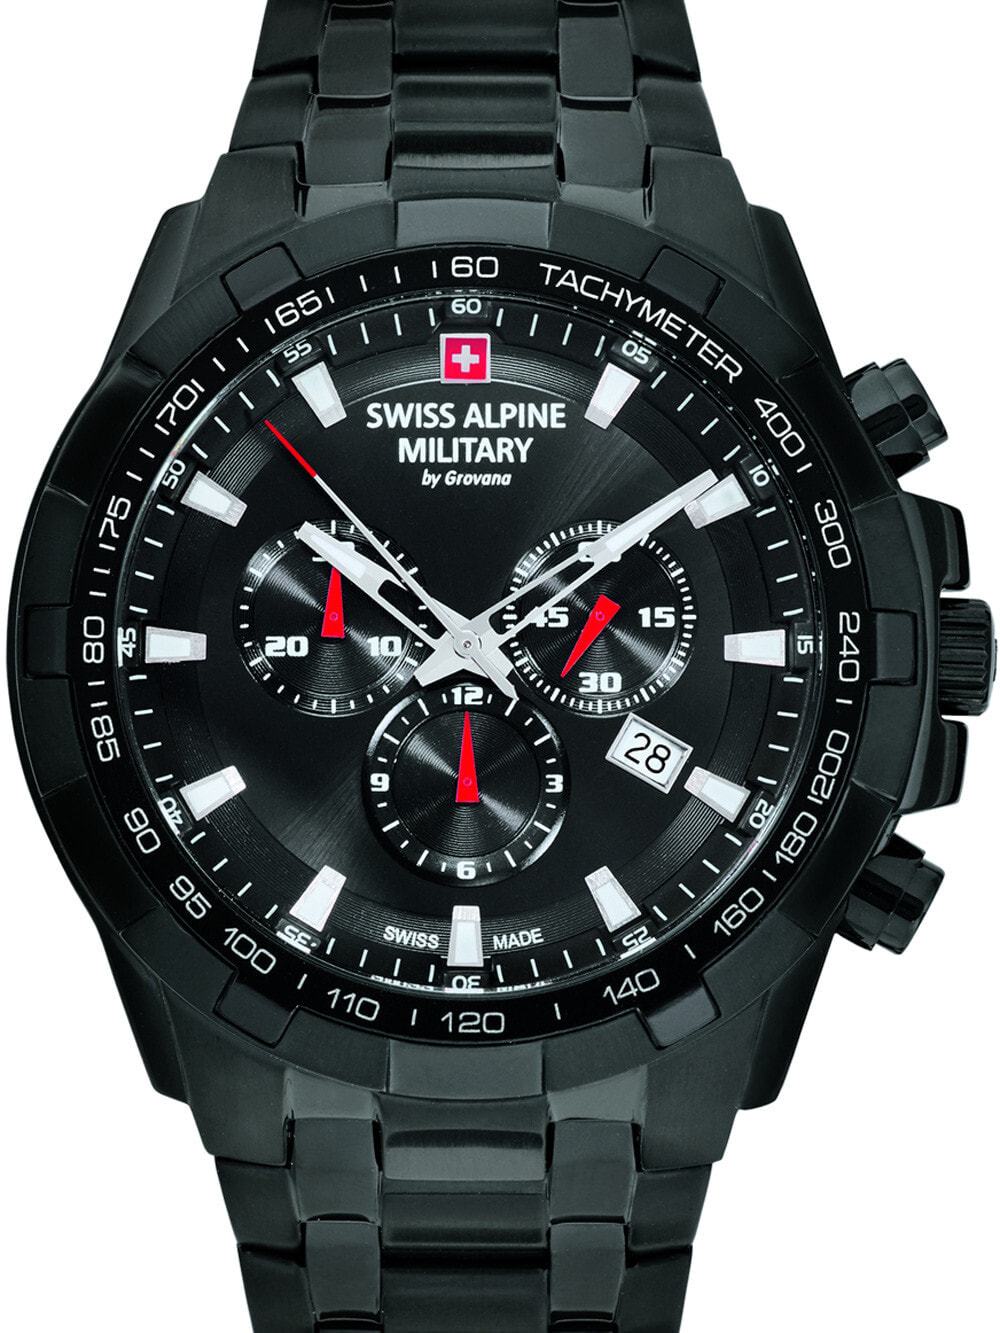 Мужские наручные часы с черным браслетом Swiss Alpine Military 7043.9177 chrono 46mm 10ATM